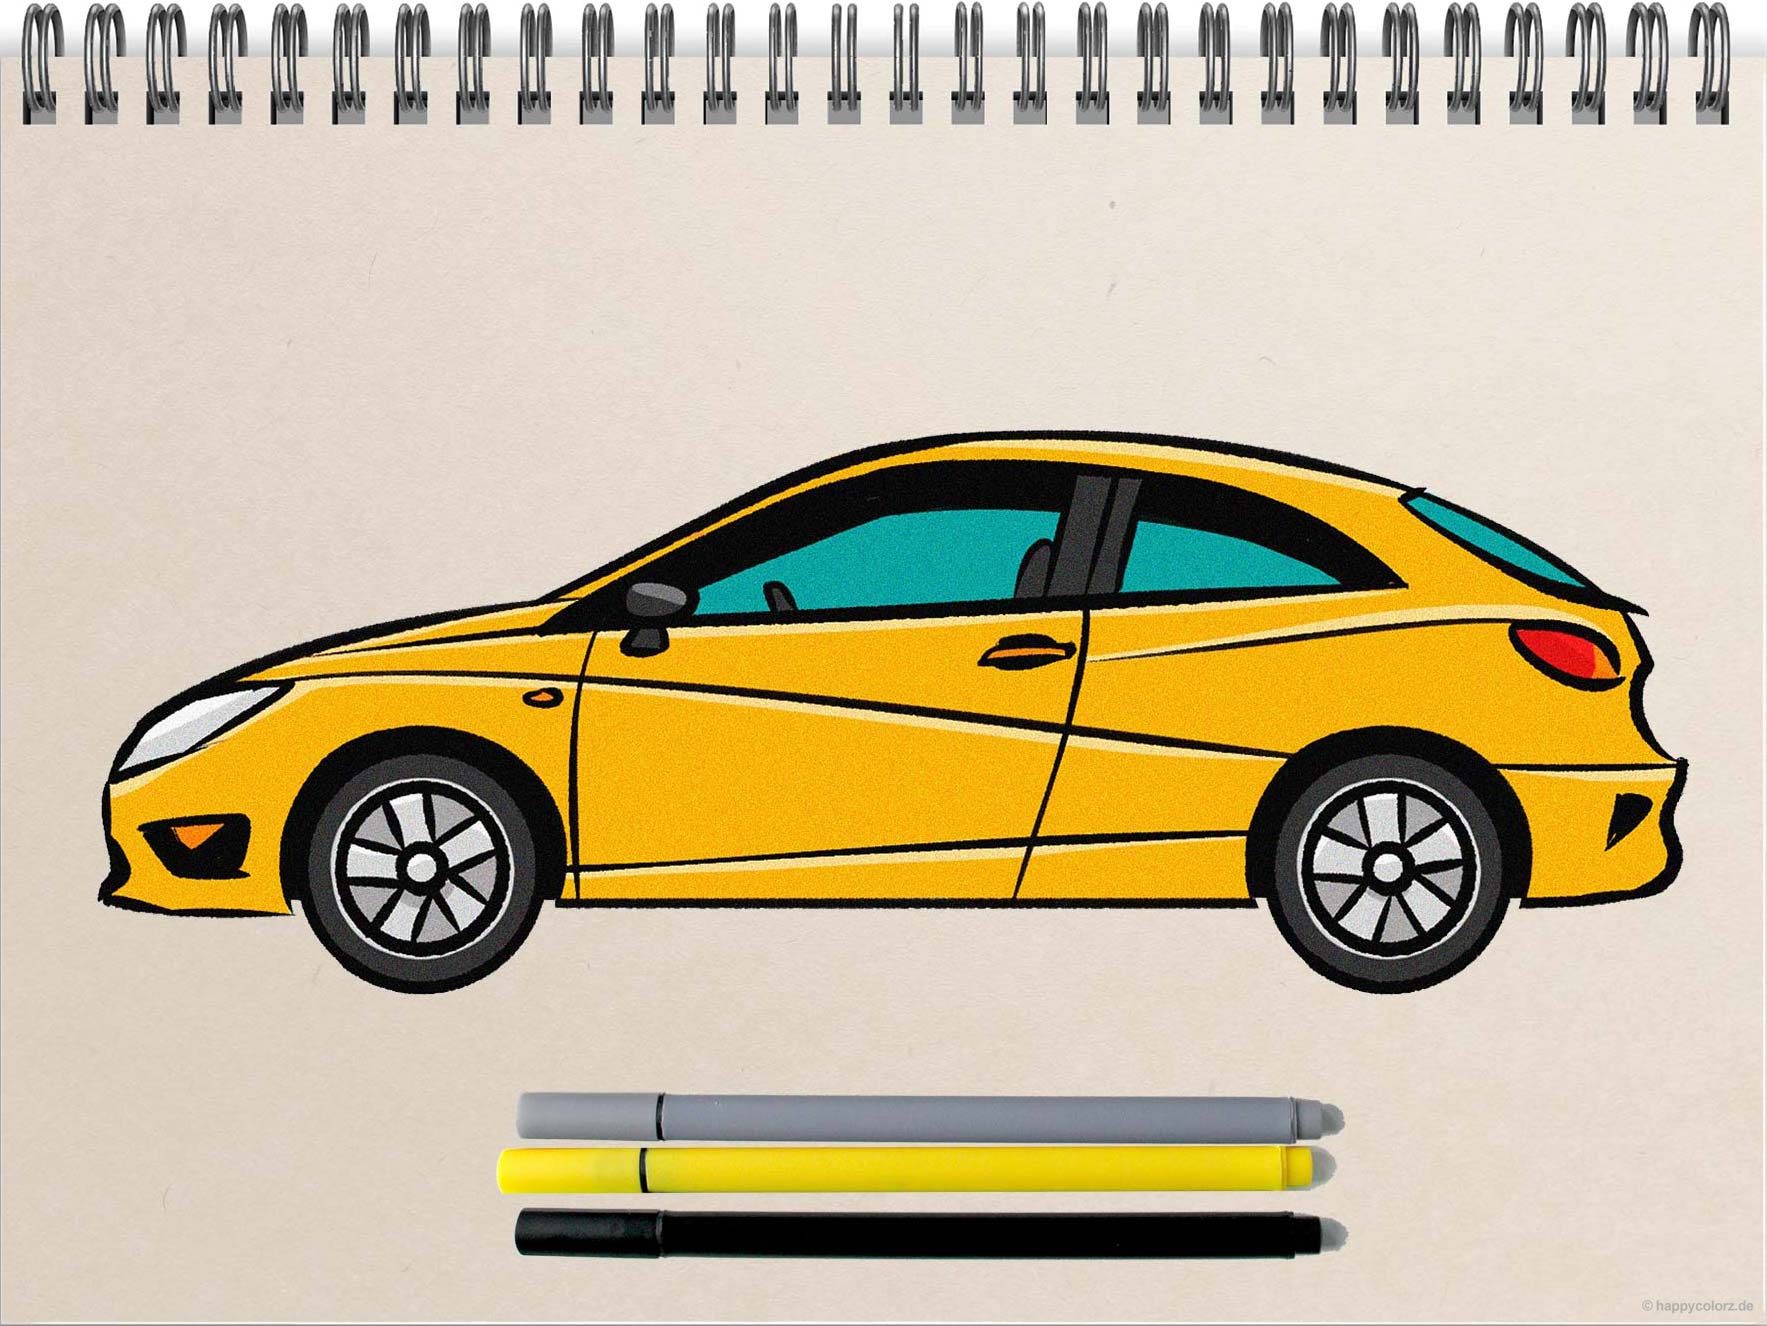 Auto zeichnen - Schritt-für-Schritt Anleitung mit Vorlagen